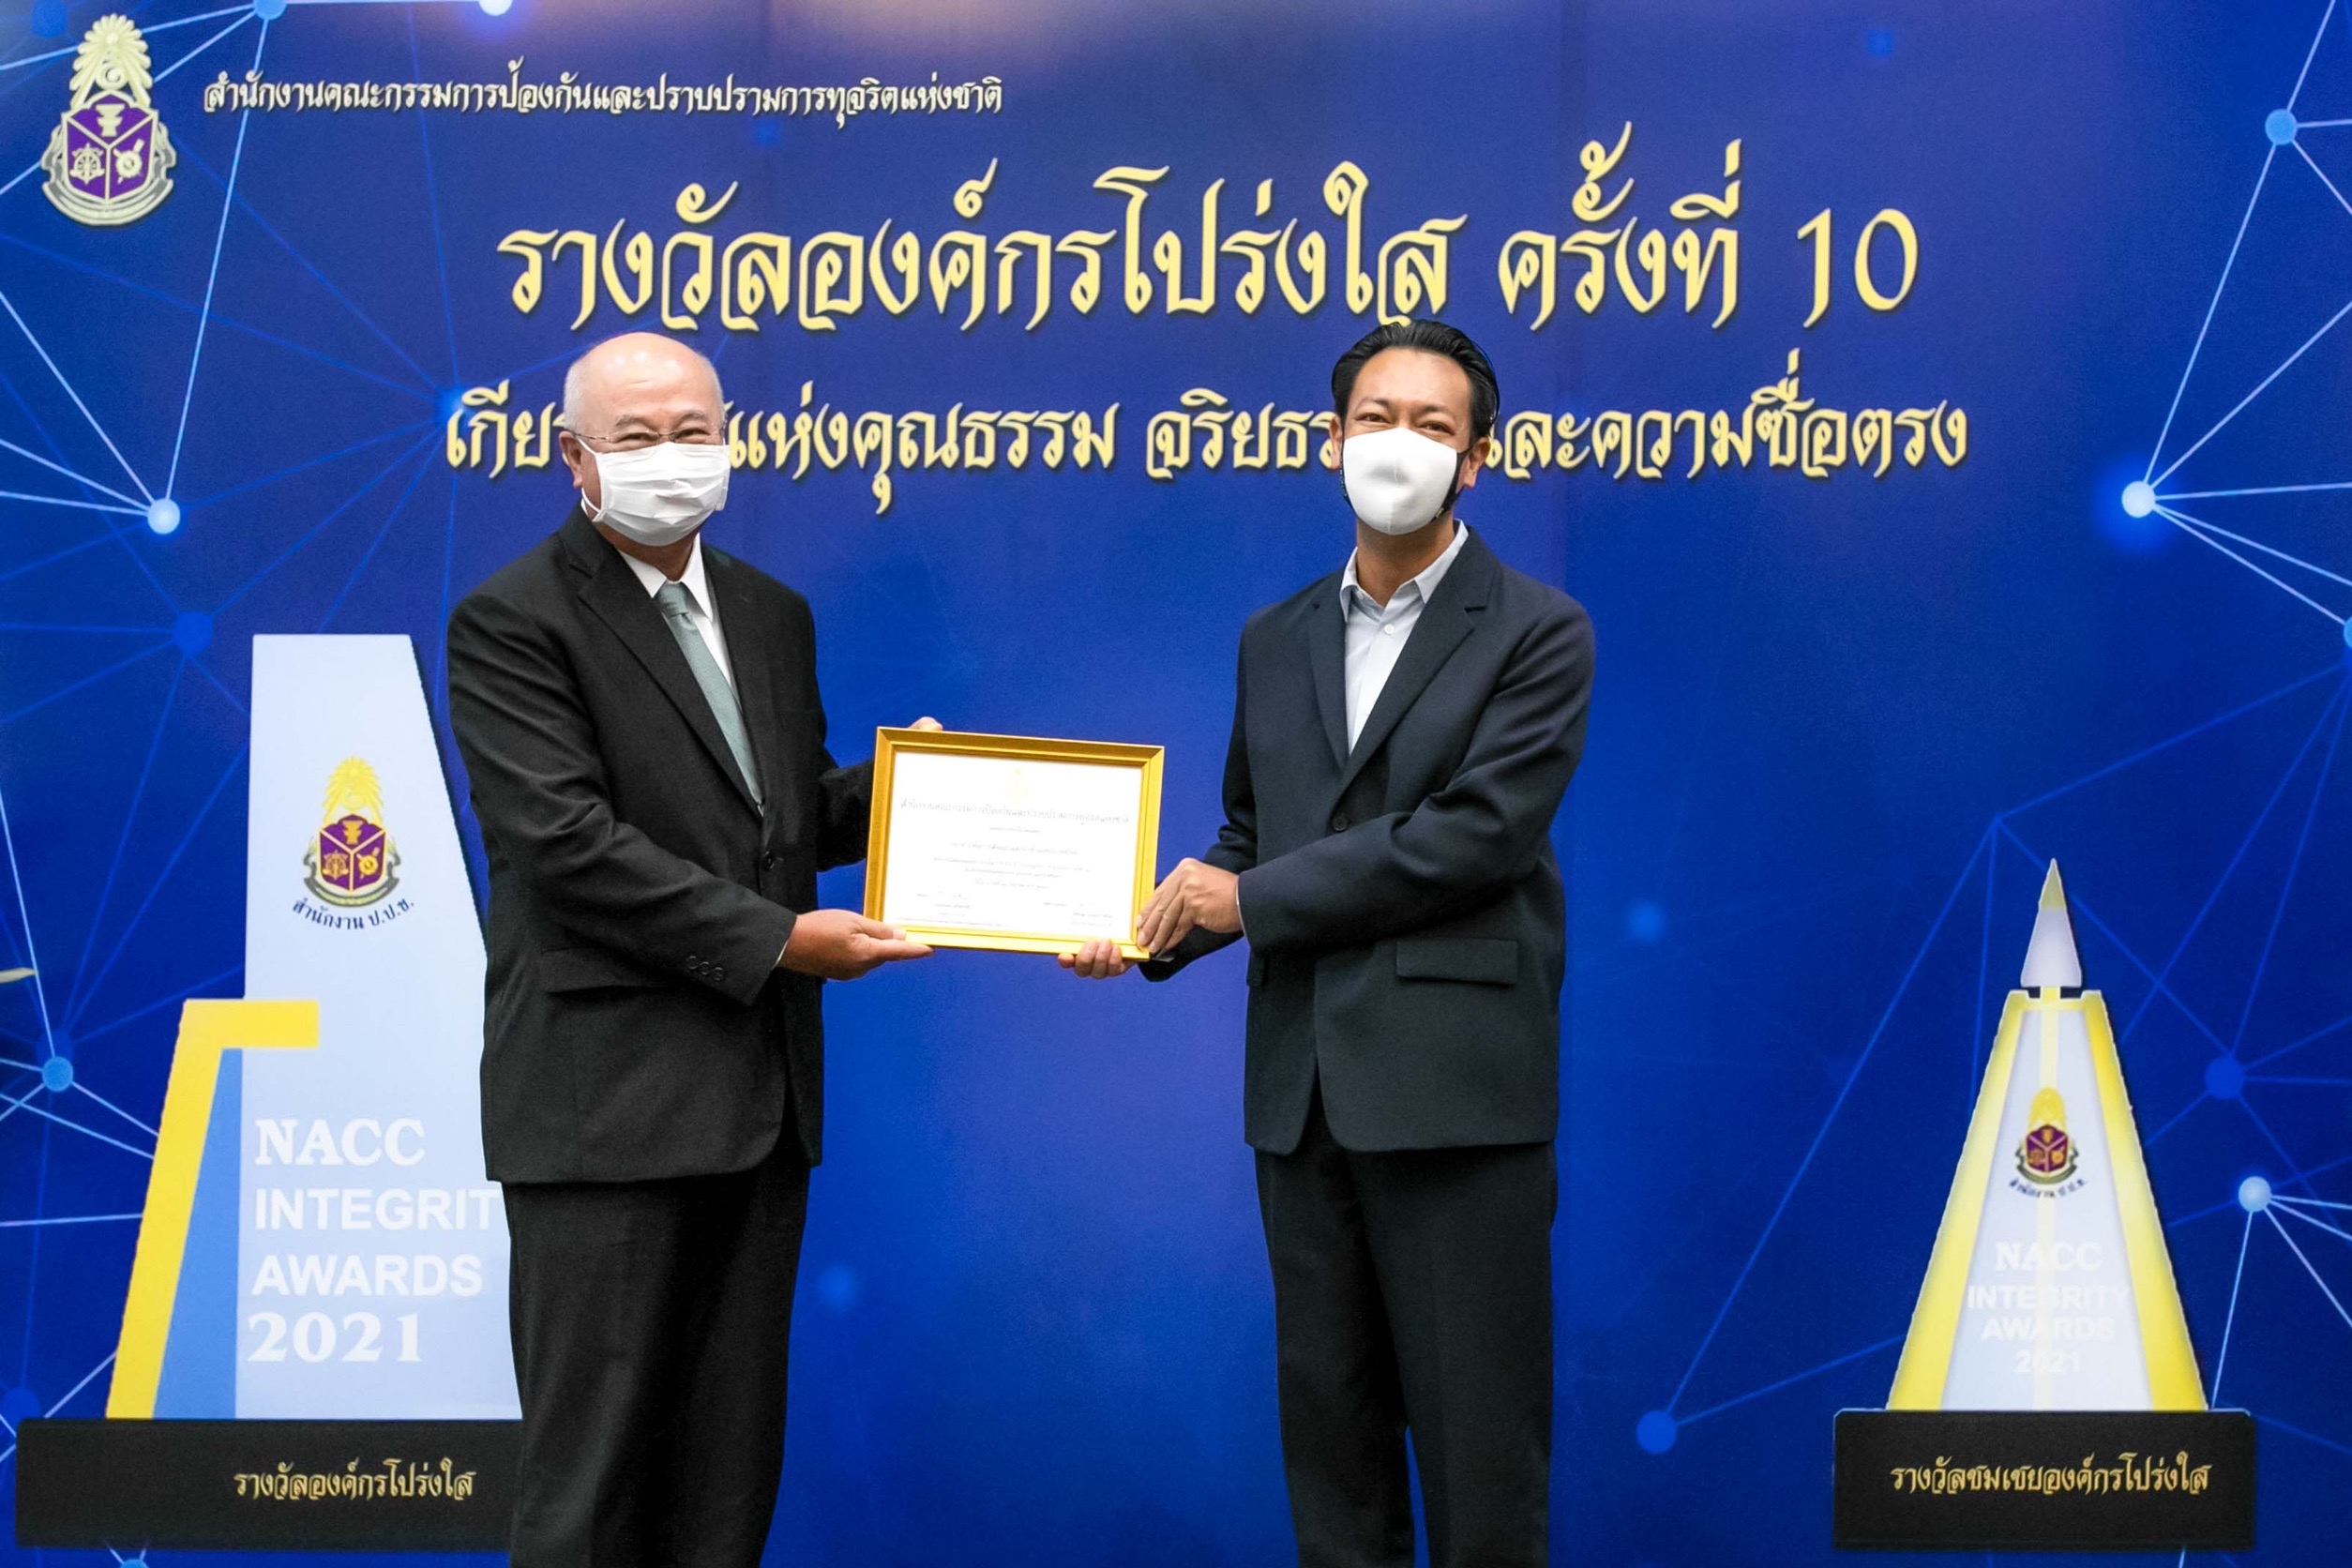 EXIM BANK รับรางวัลชมเชยองค์กรโปร่งใส ครั้งที่ 10